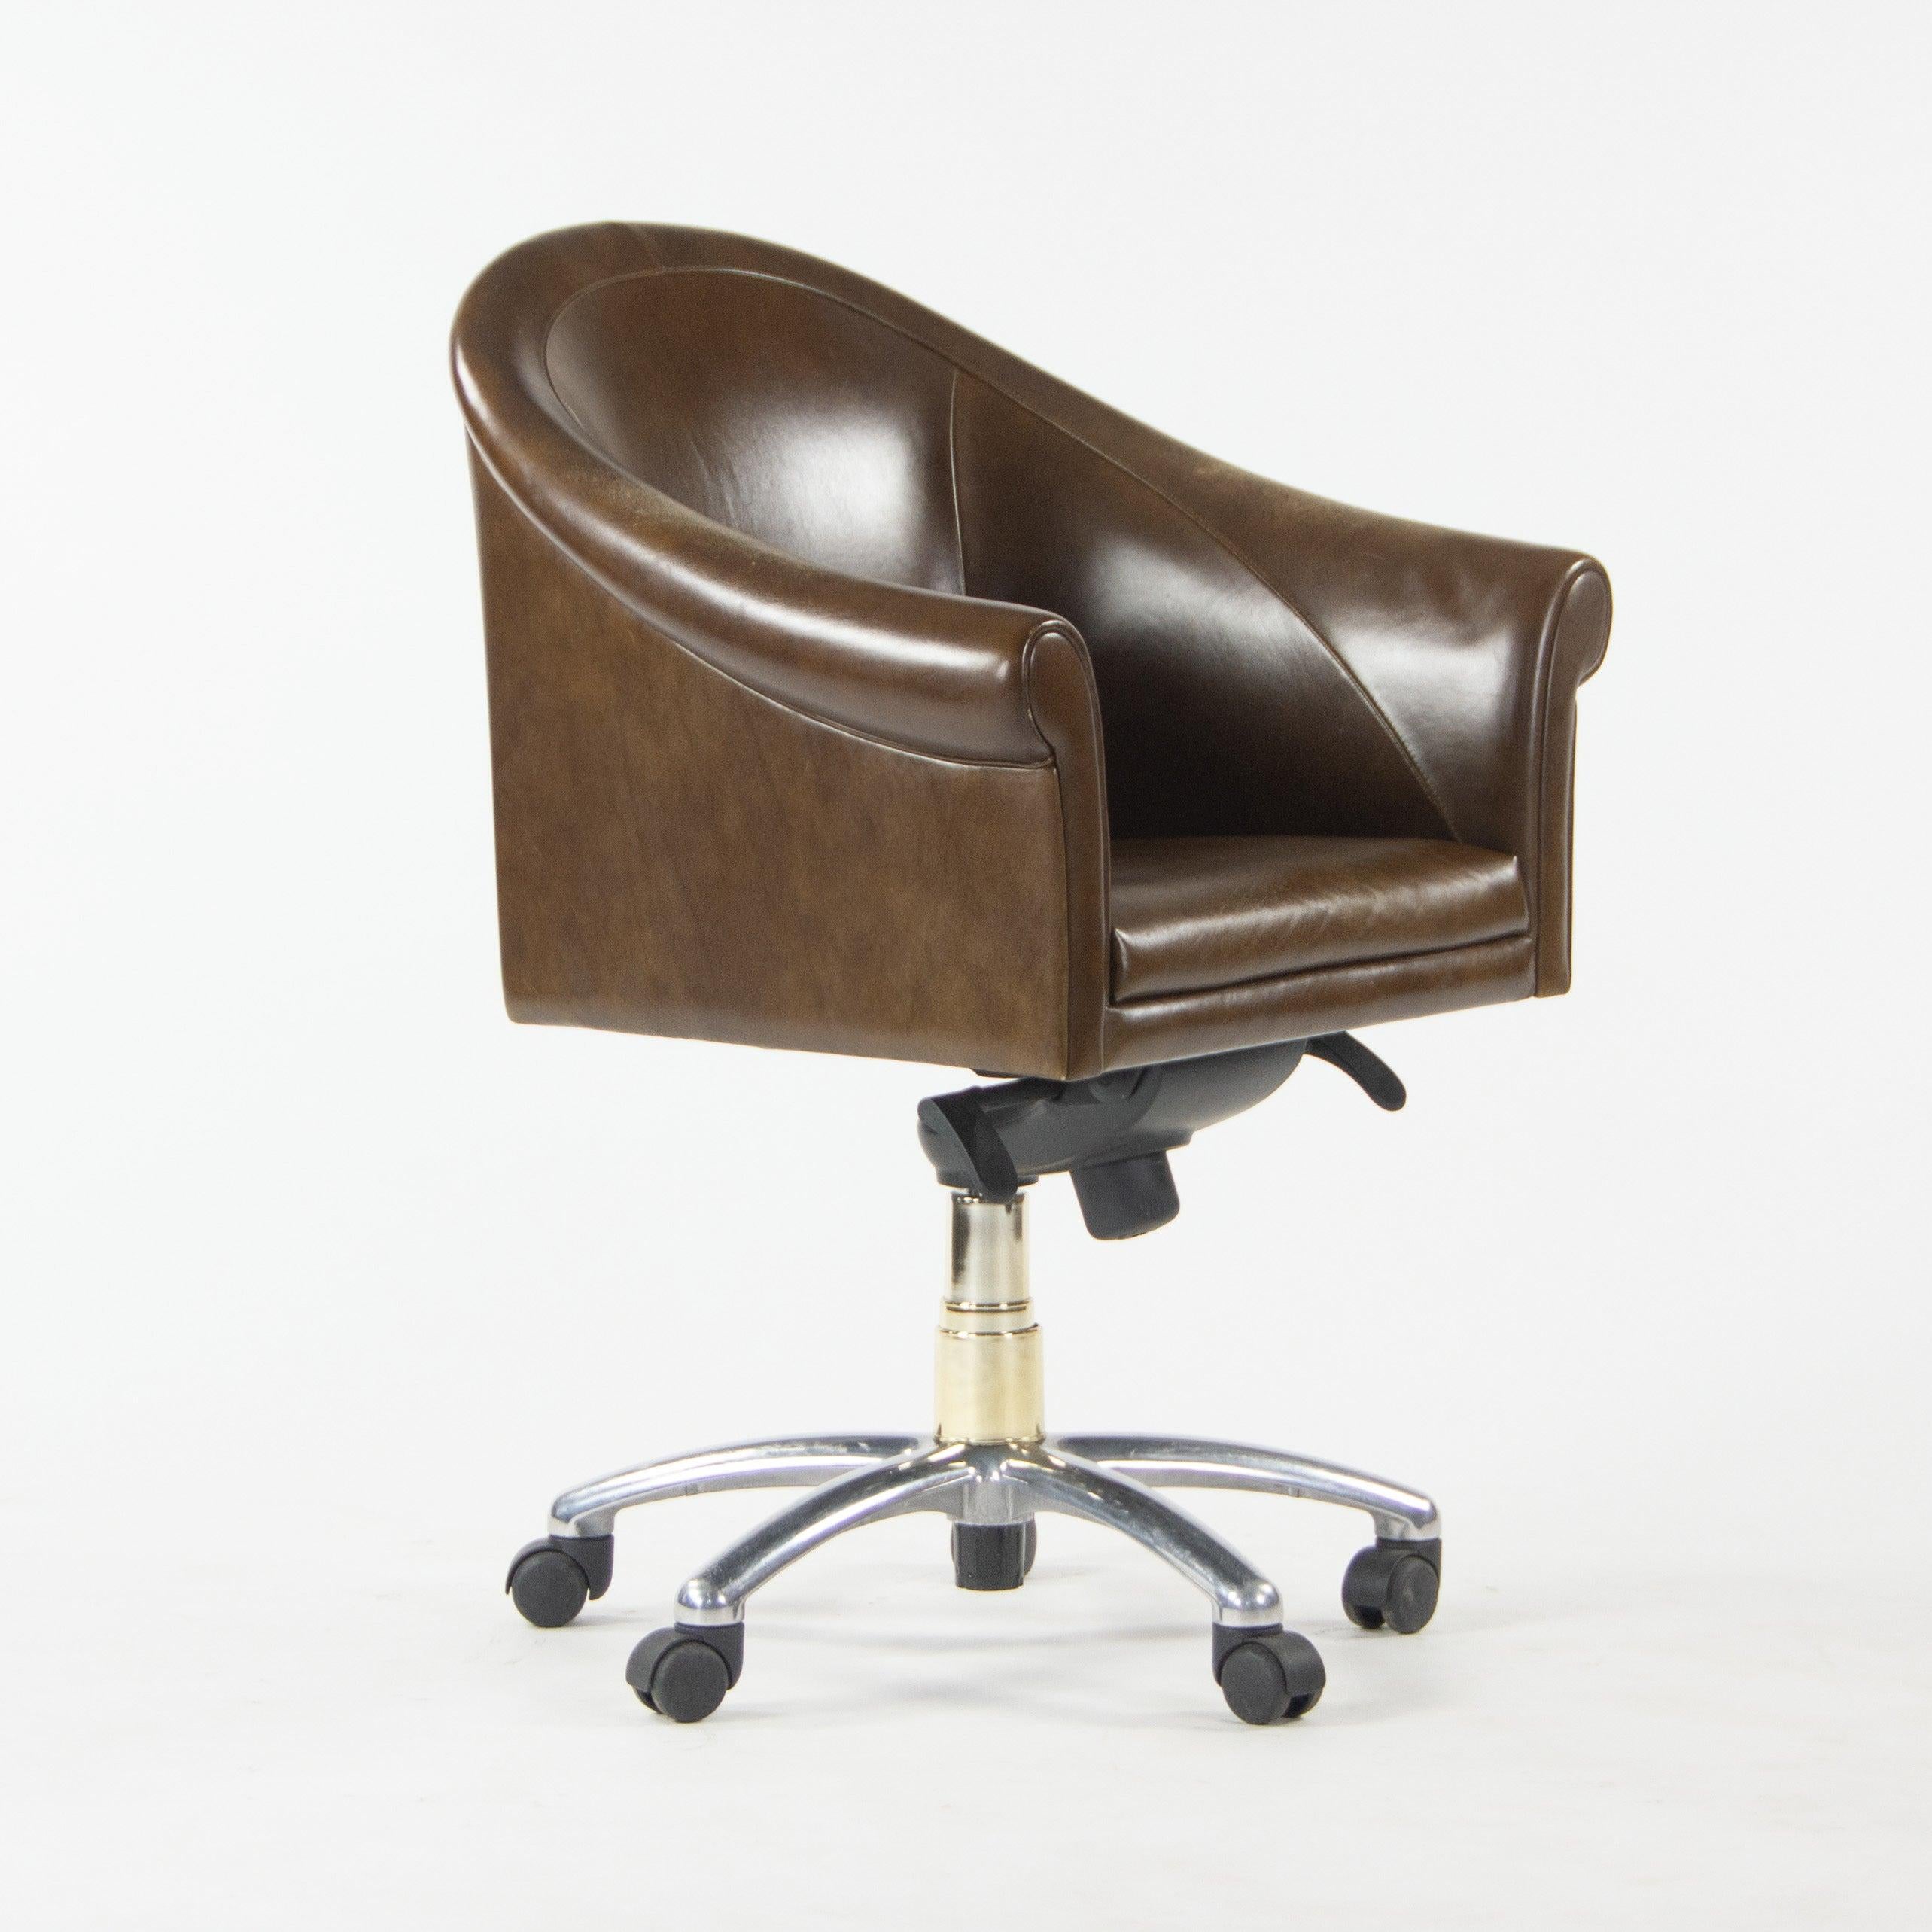 Nous vous proposons à la vente un ensemble de chaises de bureau Poltrona Frau (vendues séparément) sur roulettes. Il fait partie de la collection Sinan de Poltrona Frau, conçue par Luca Scacchetti. 
Cet exemple est présenté dans un cuir marron. Les